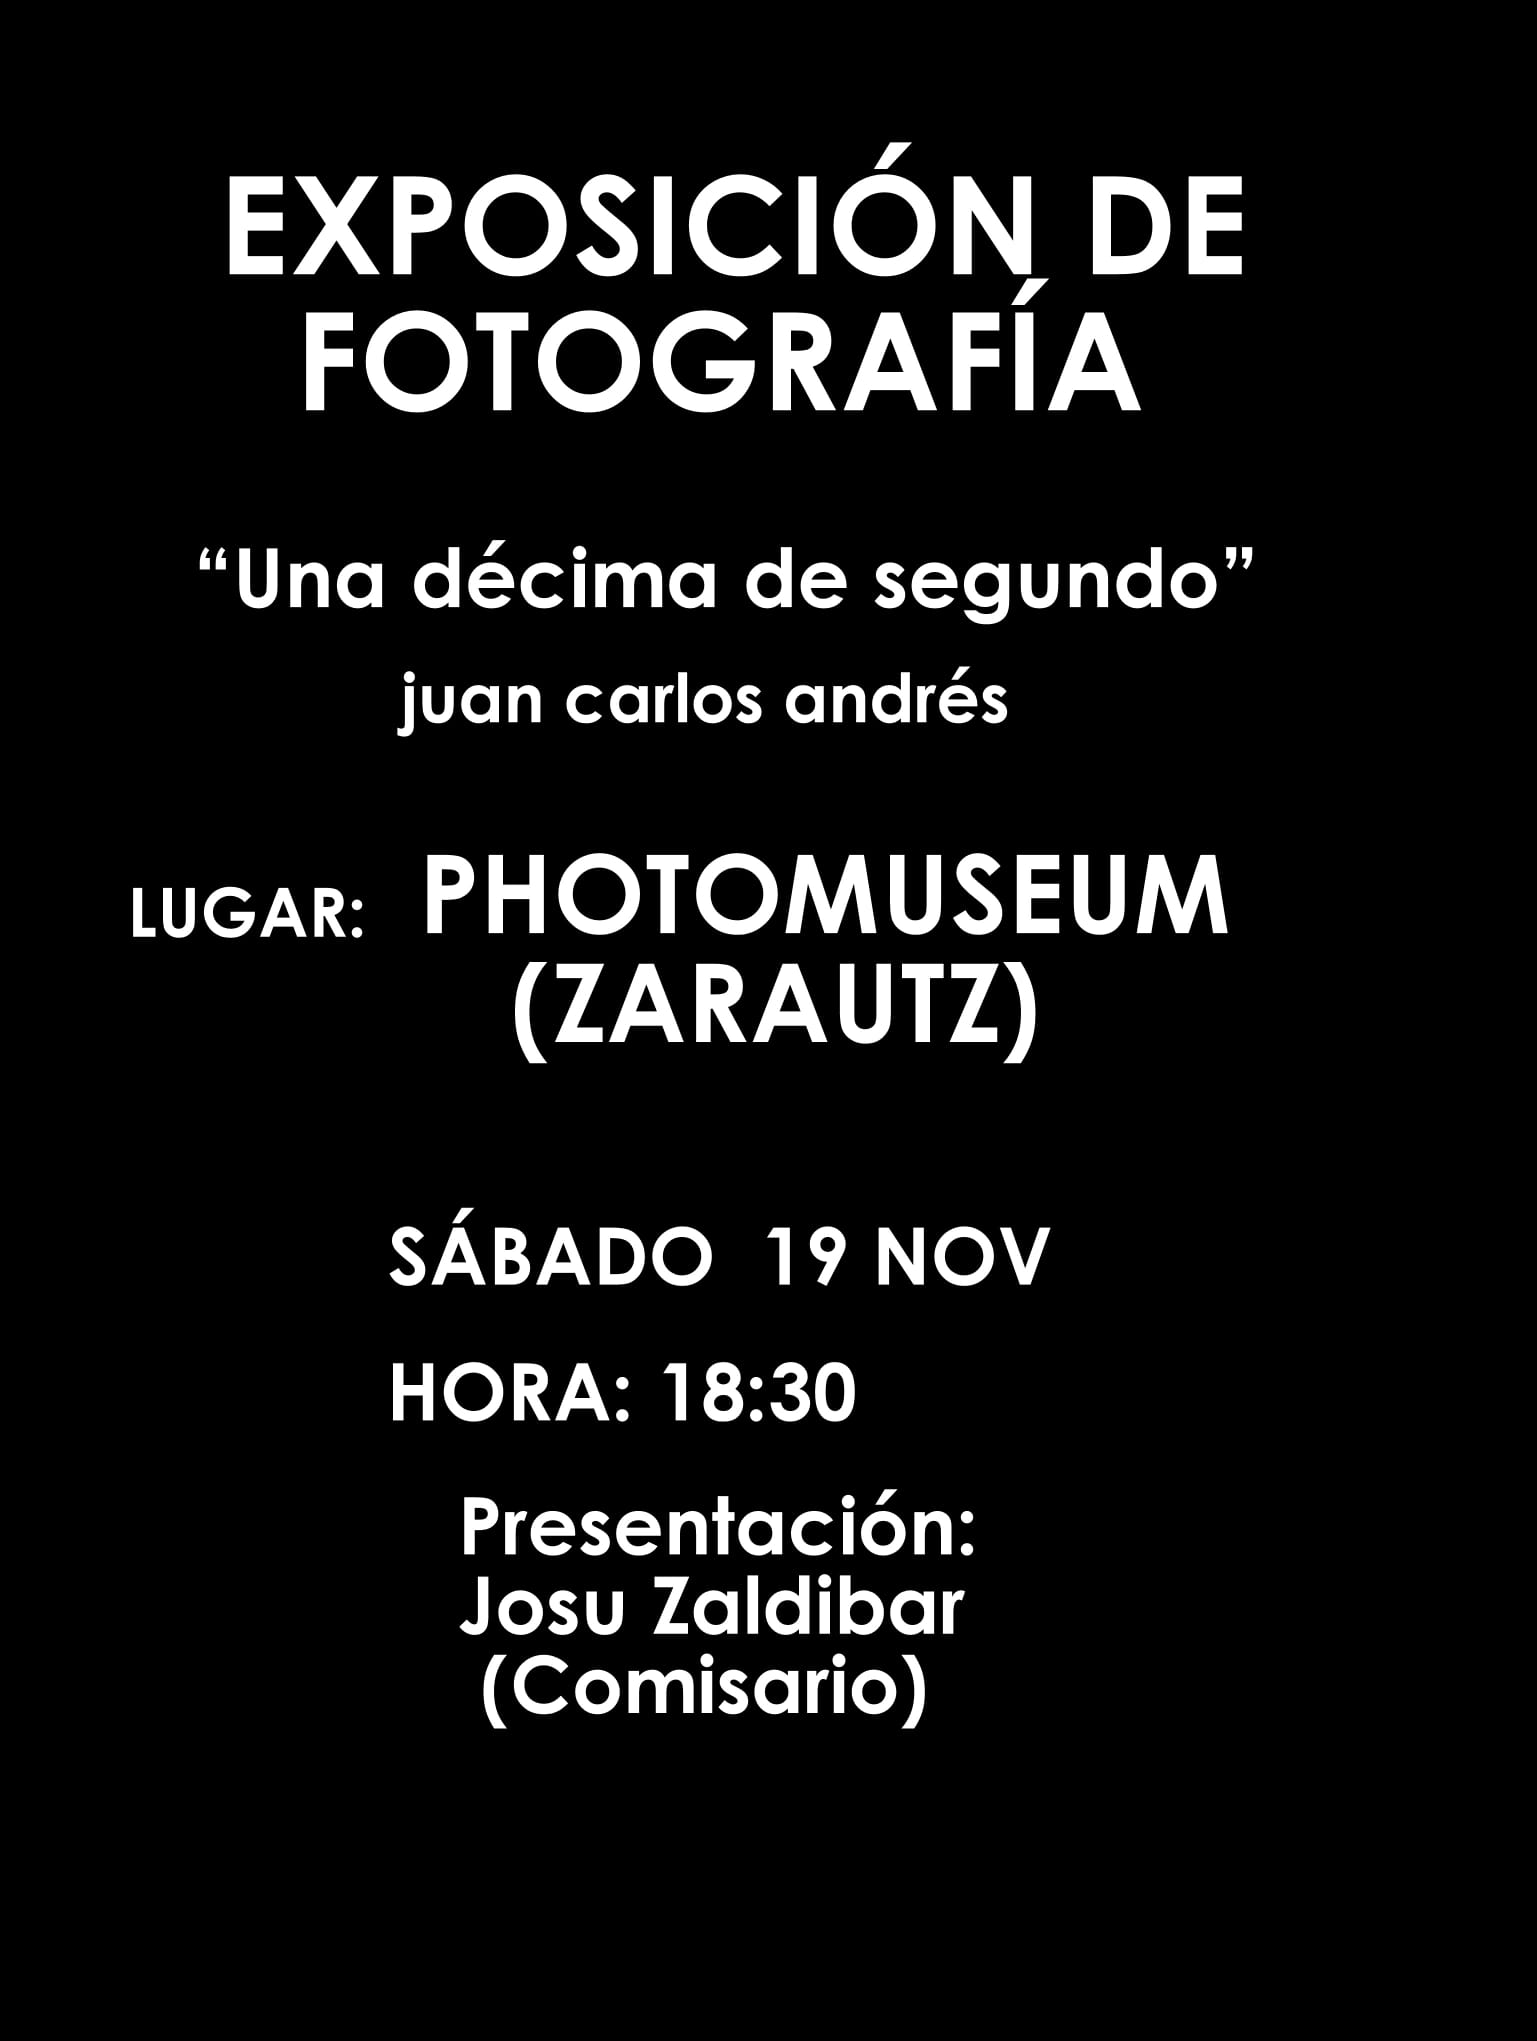 Exposición de Juan Carlos Andrés en el Photomuseum de Zarautz.